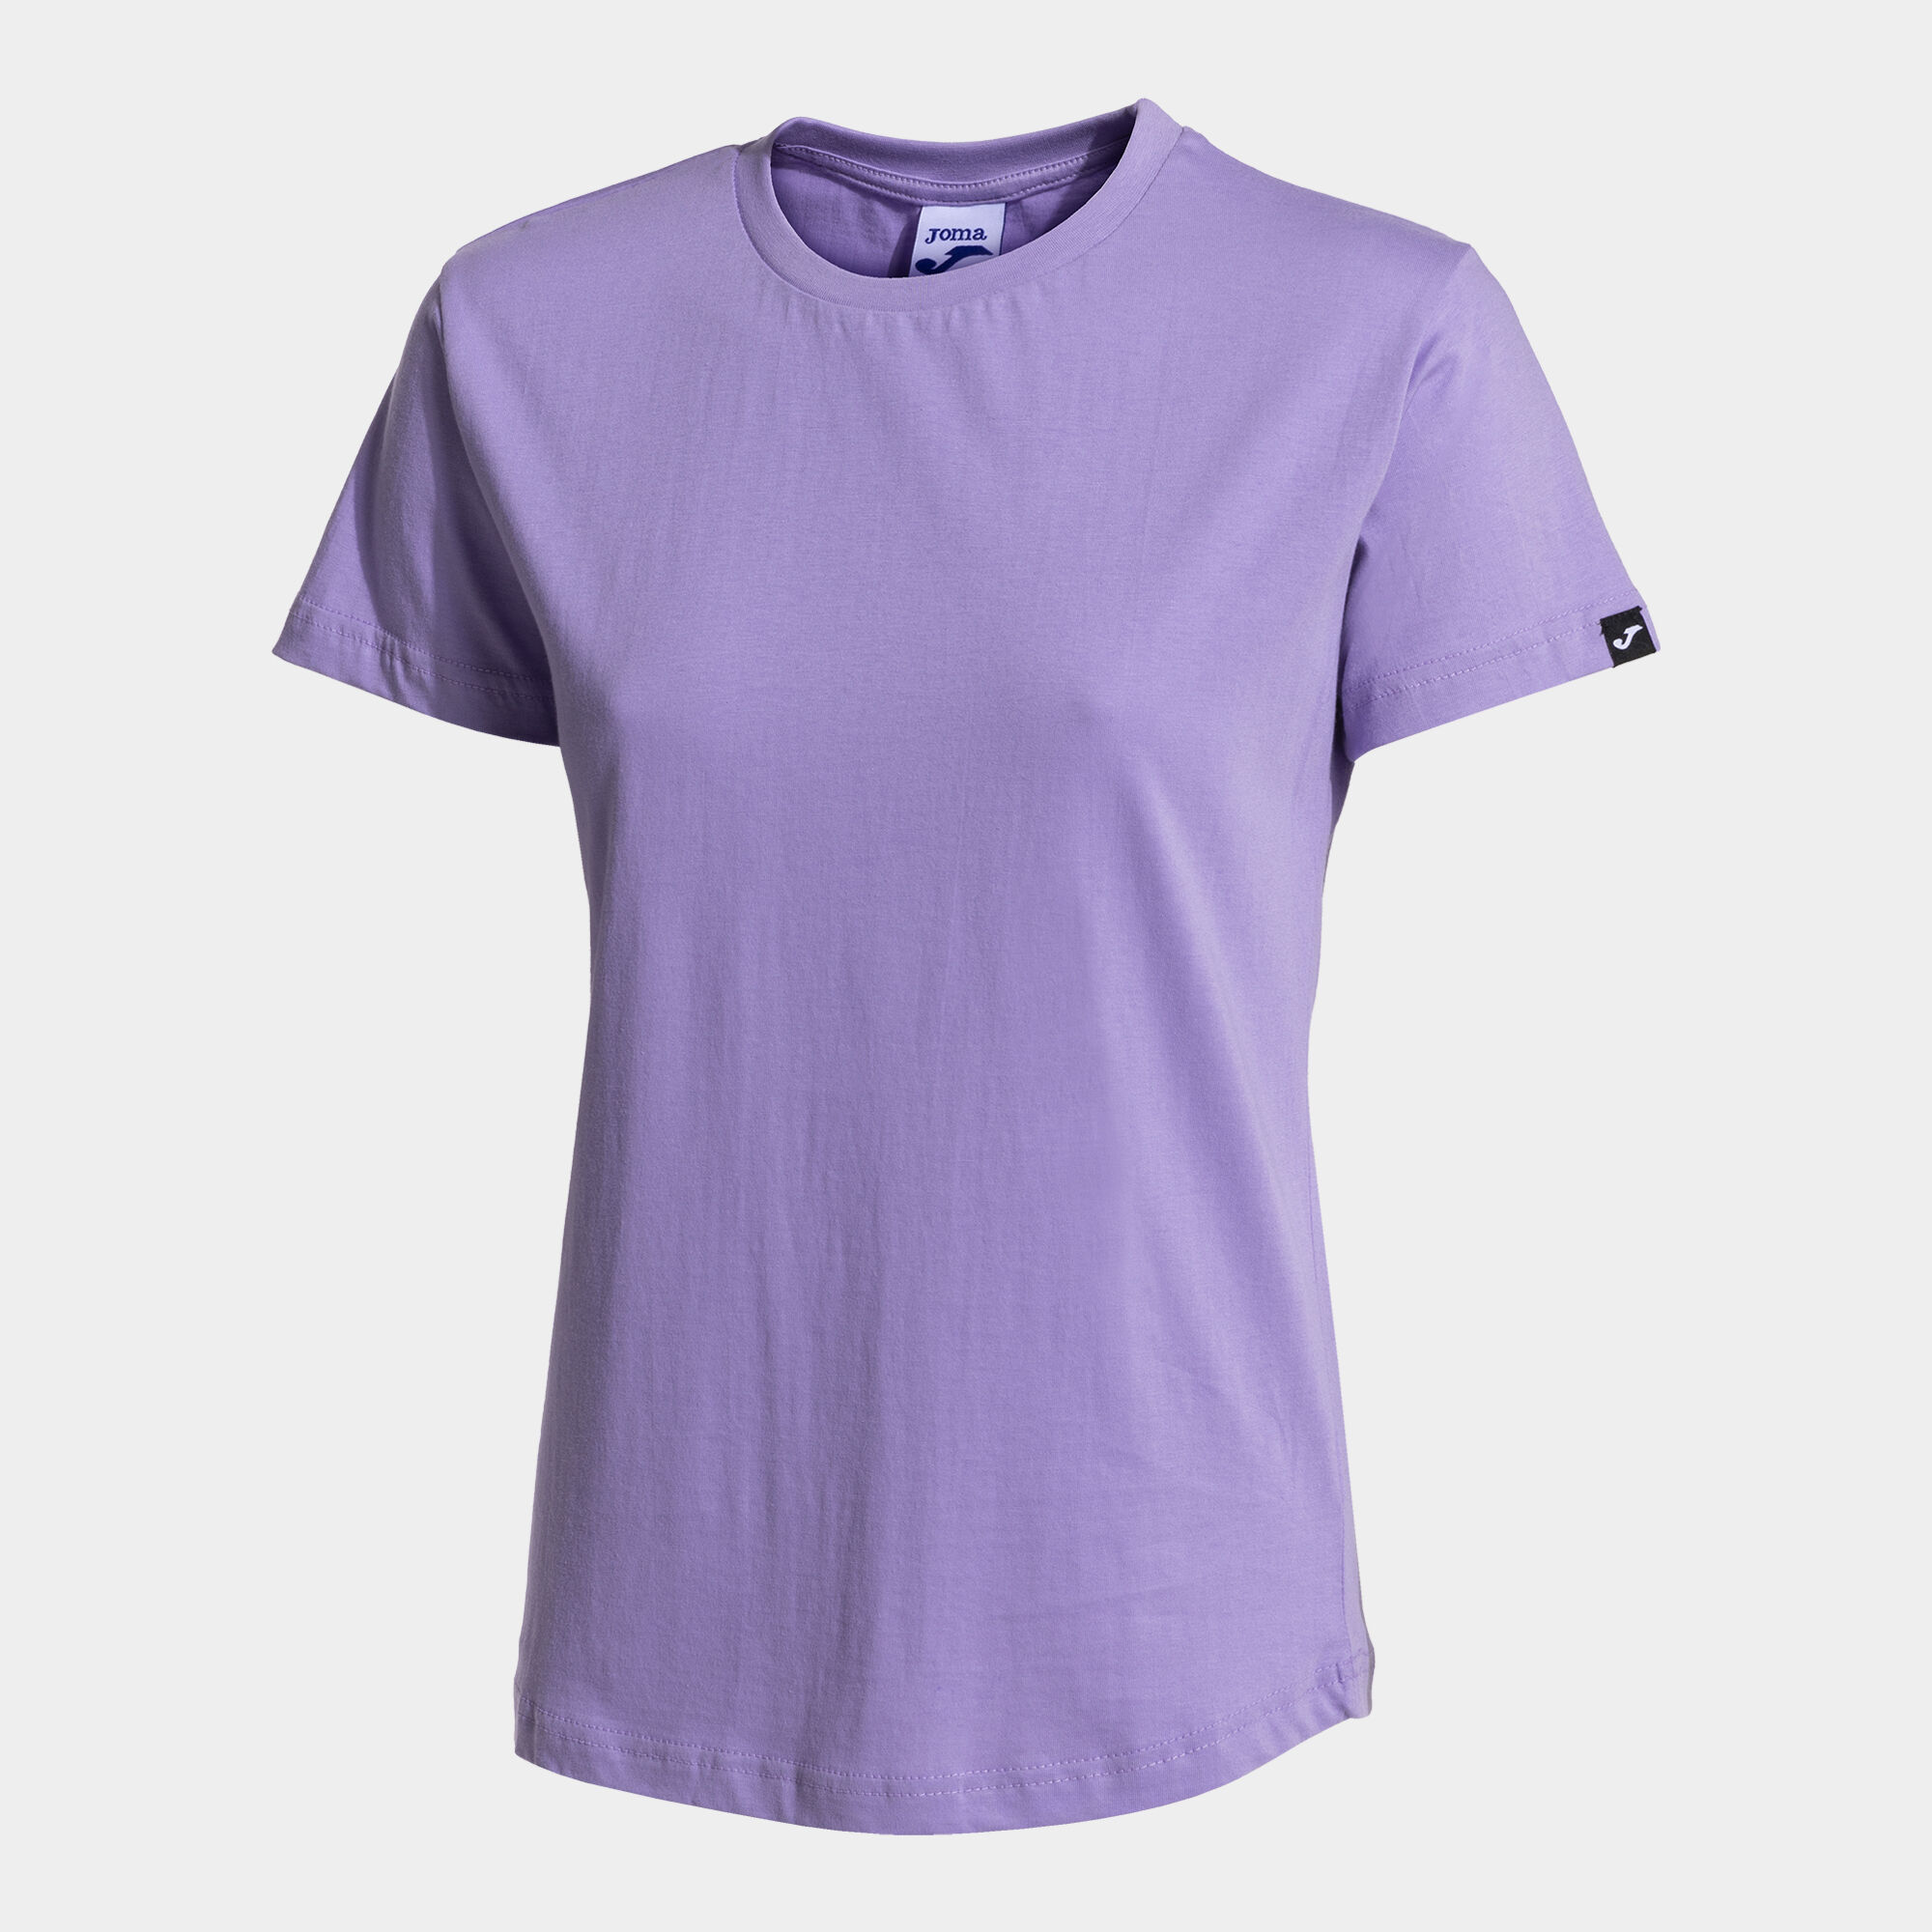 T-shirt manga curta mulher Desert roxo